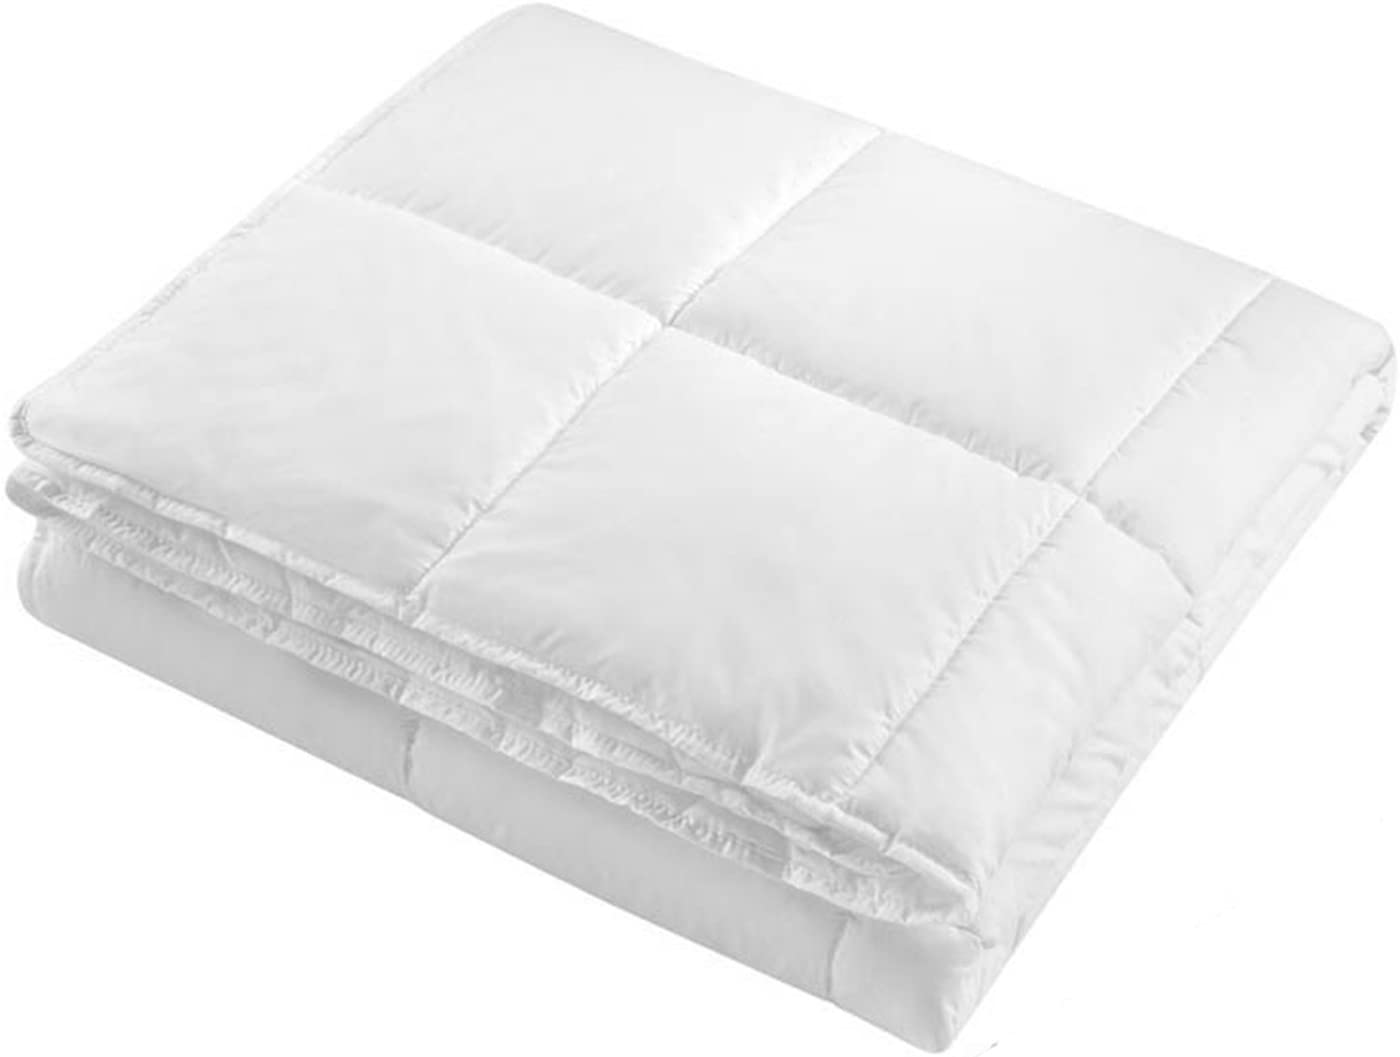 Italian Bed Linen Piumino Estivo, Microfibra, Bianco, 1 Piazza e Mezza